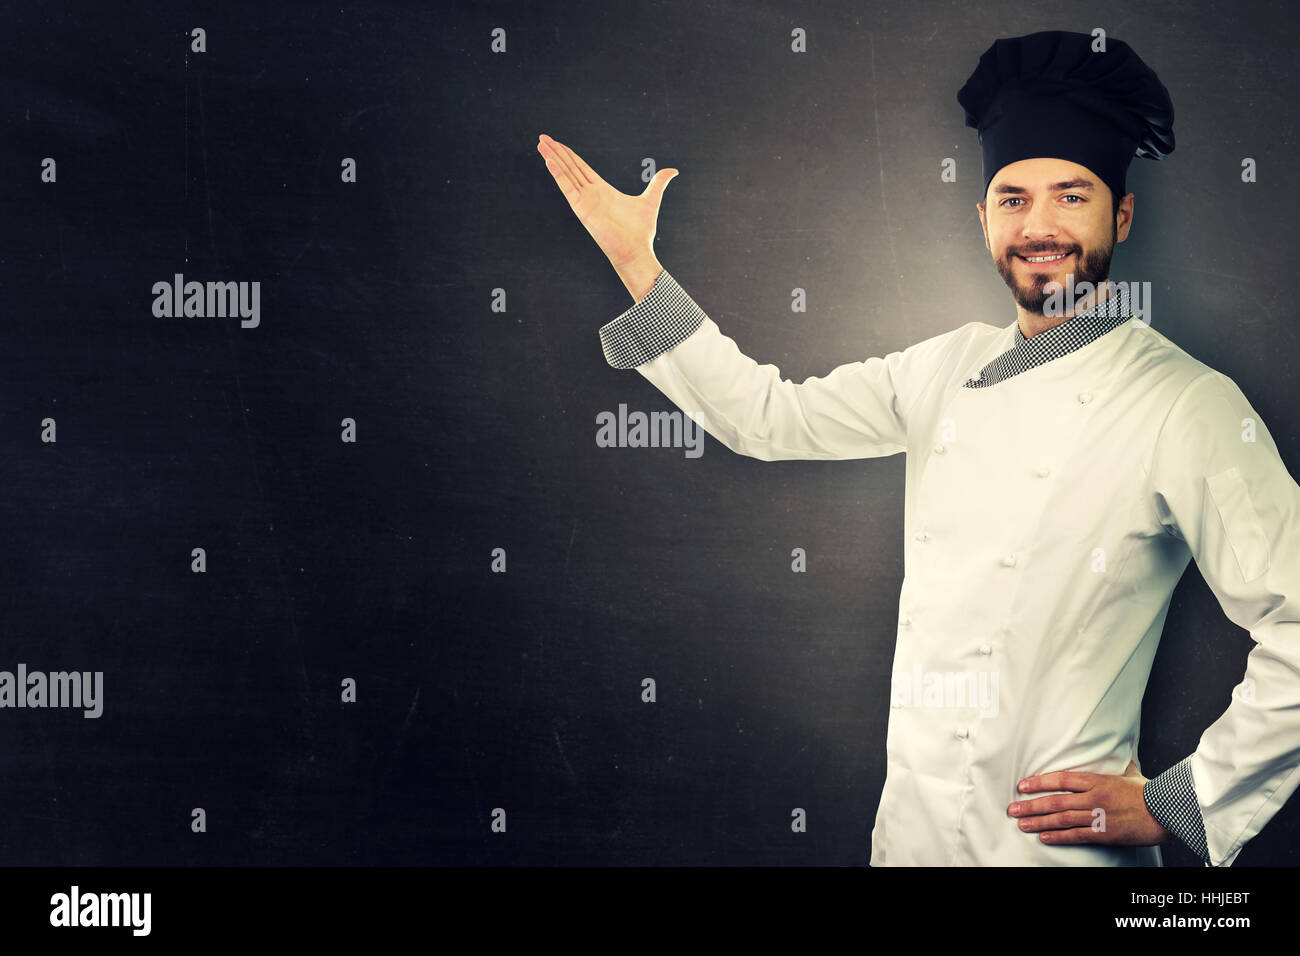 Young smiling chef en uniforme blanc sur noir with copy space Banque D'Images